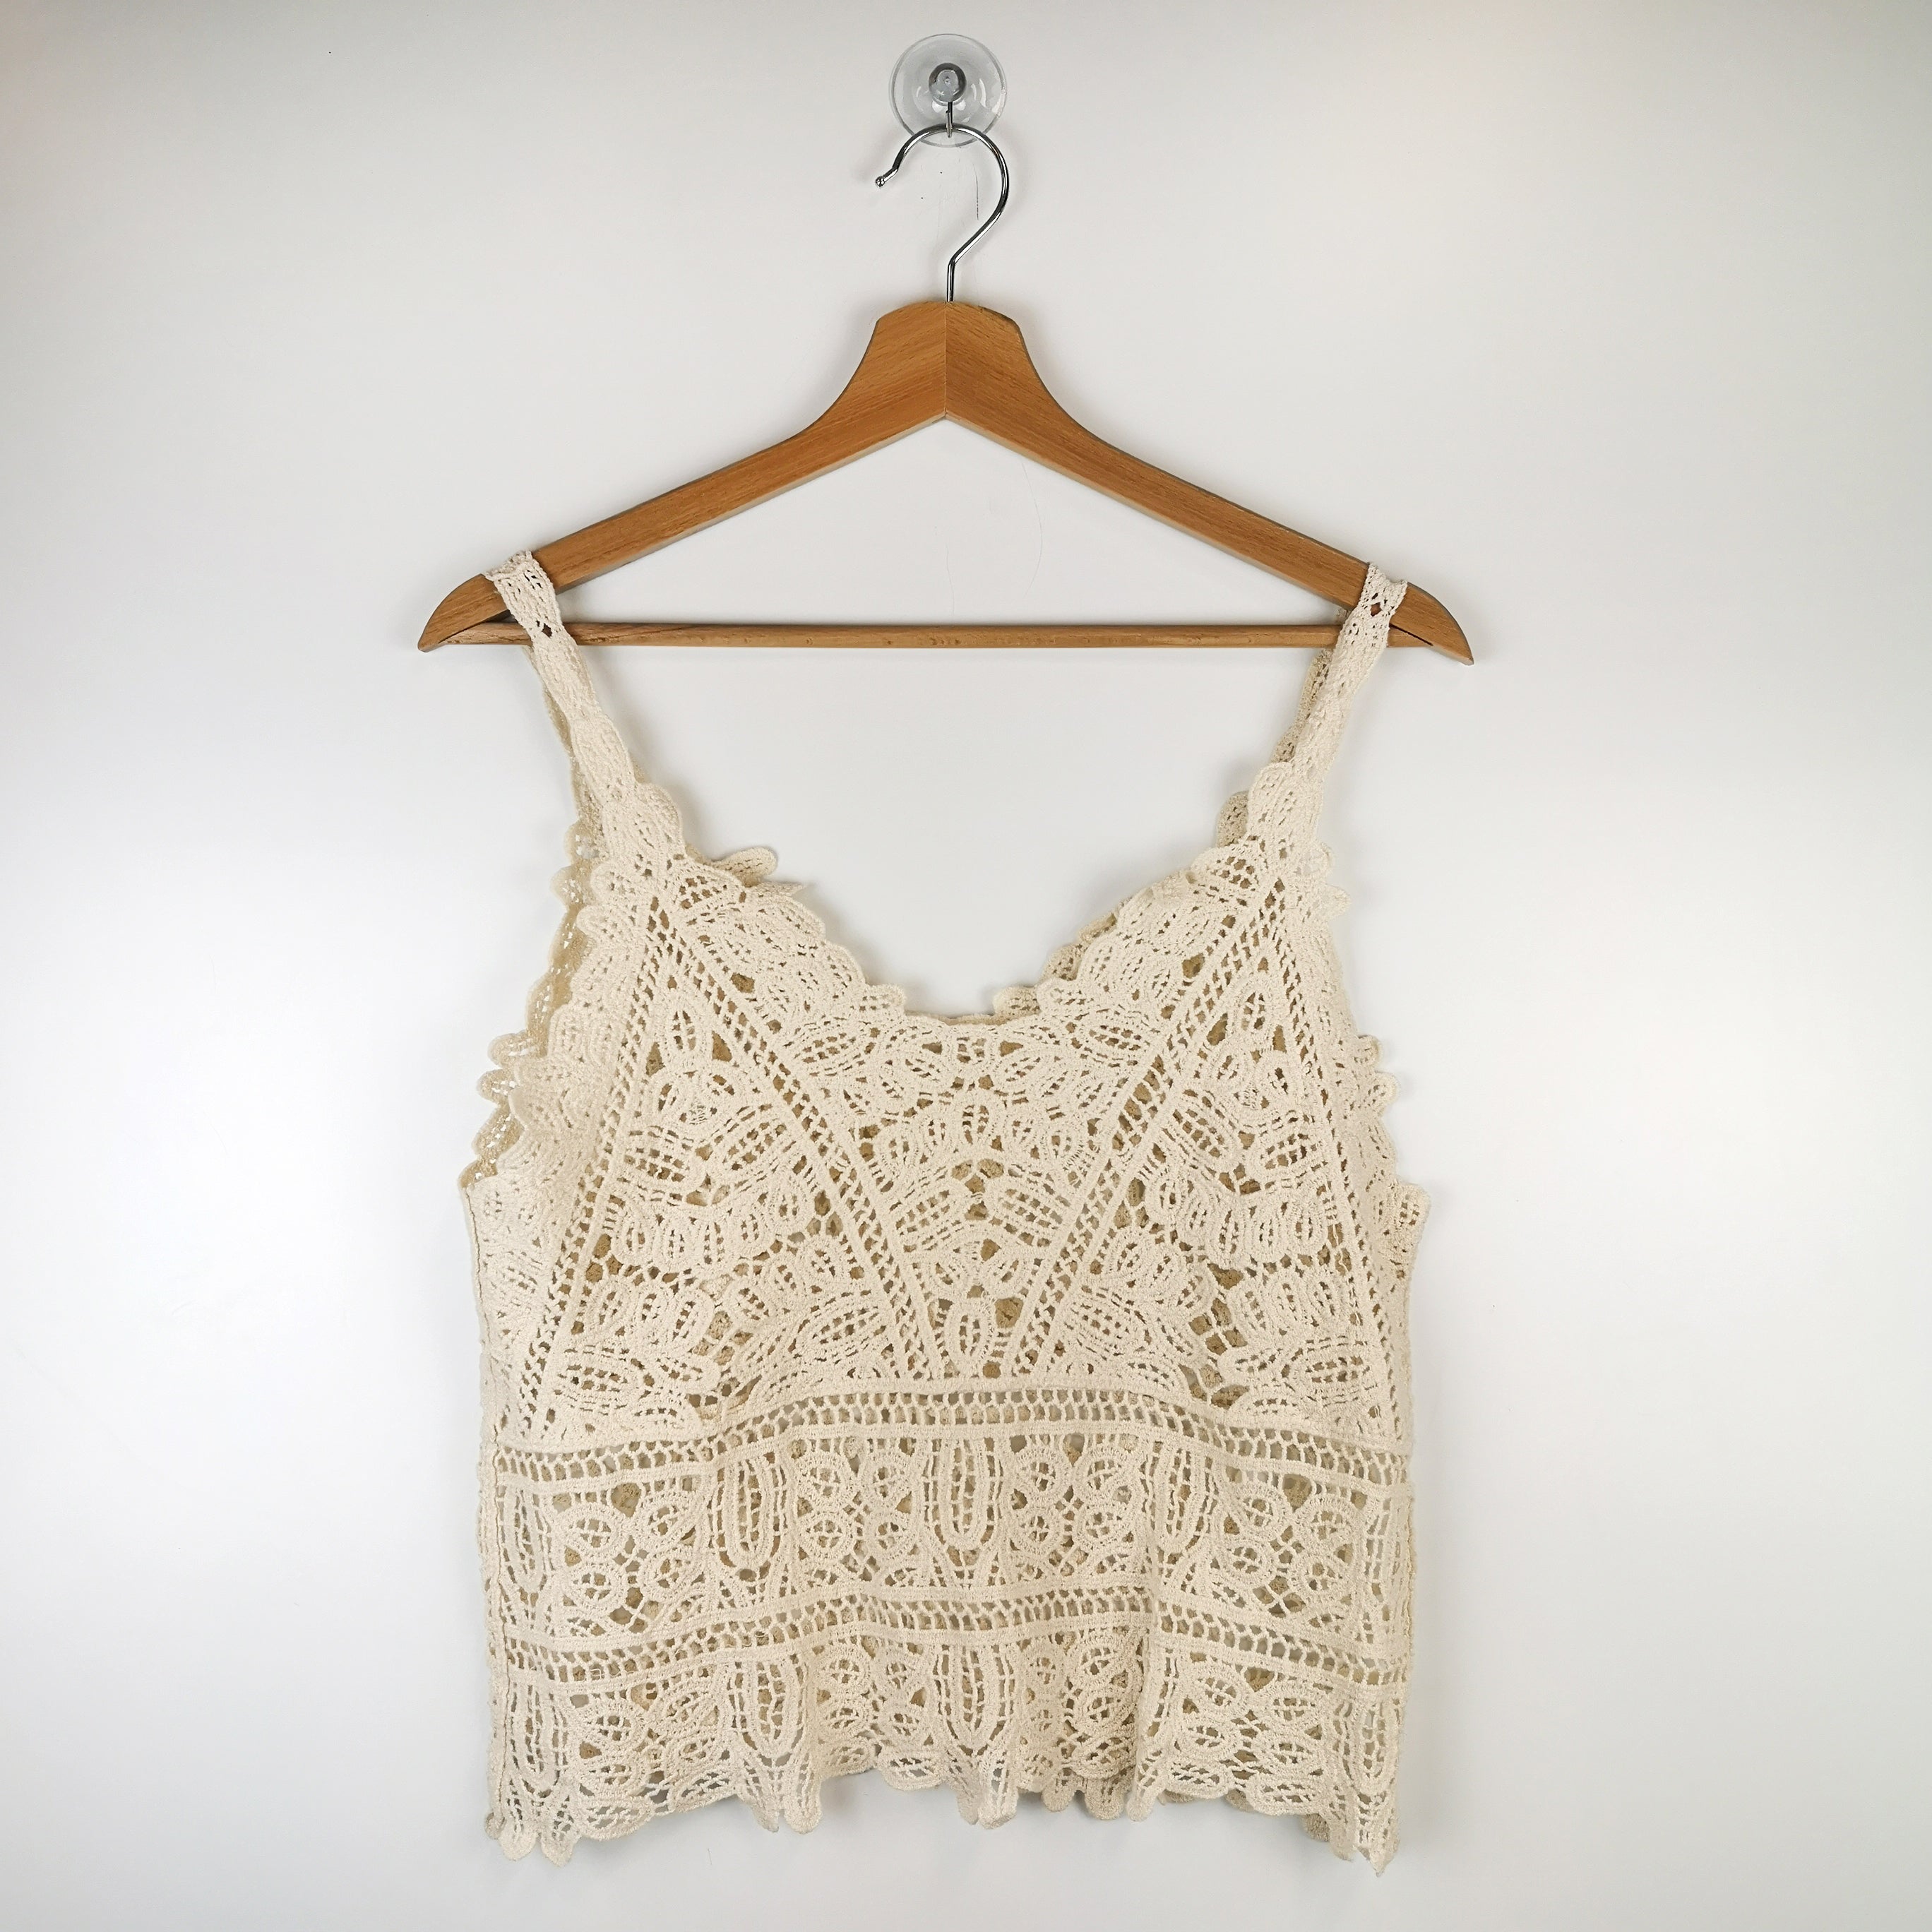 White Sleeveless Crochet Top